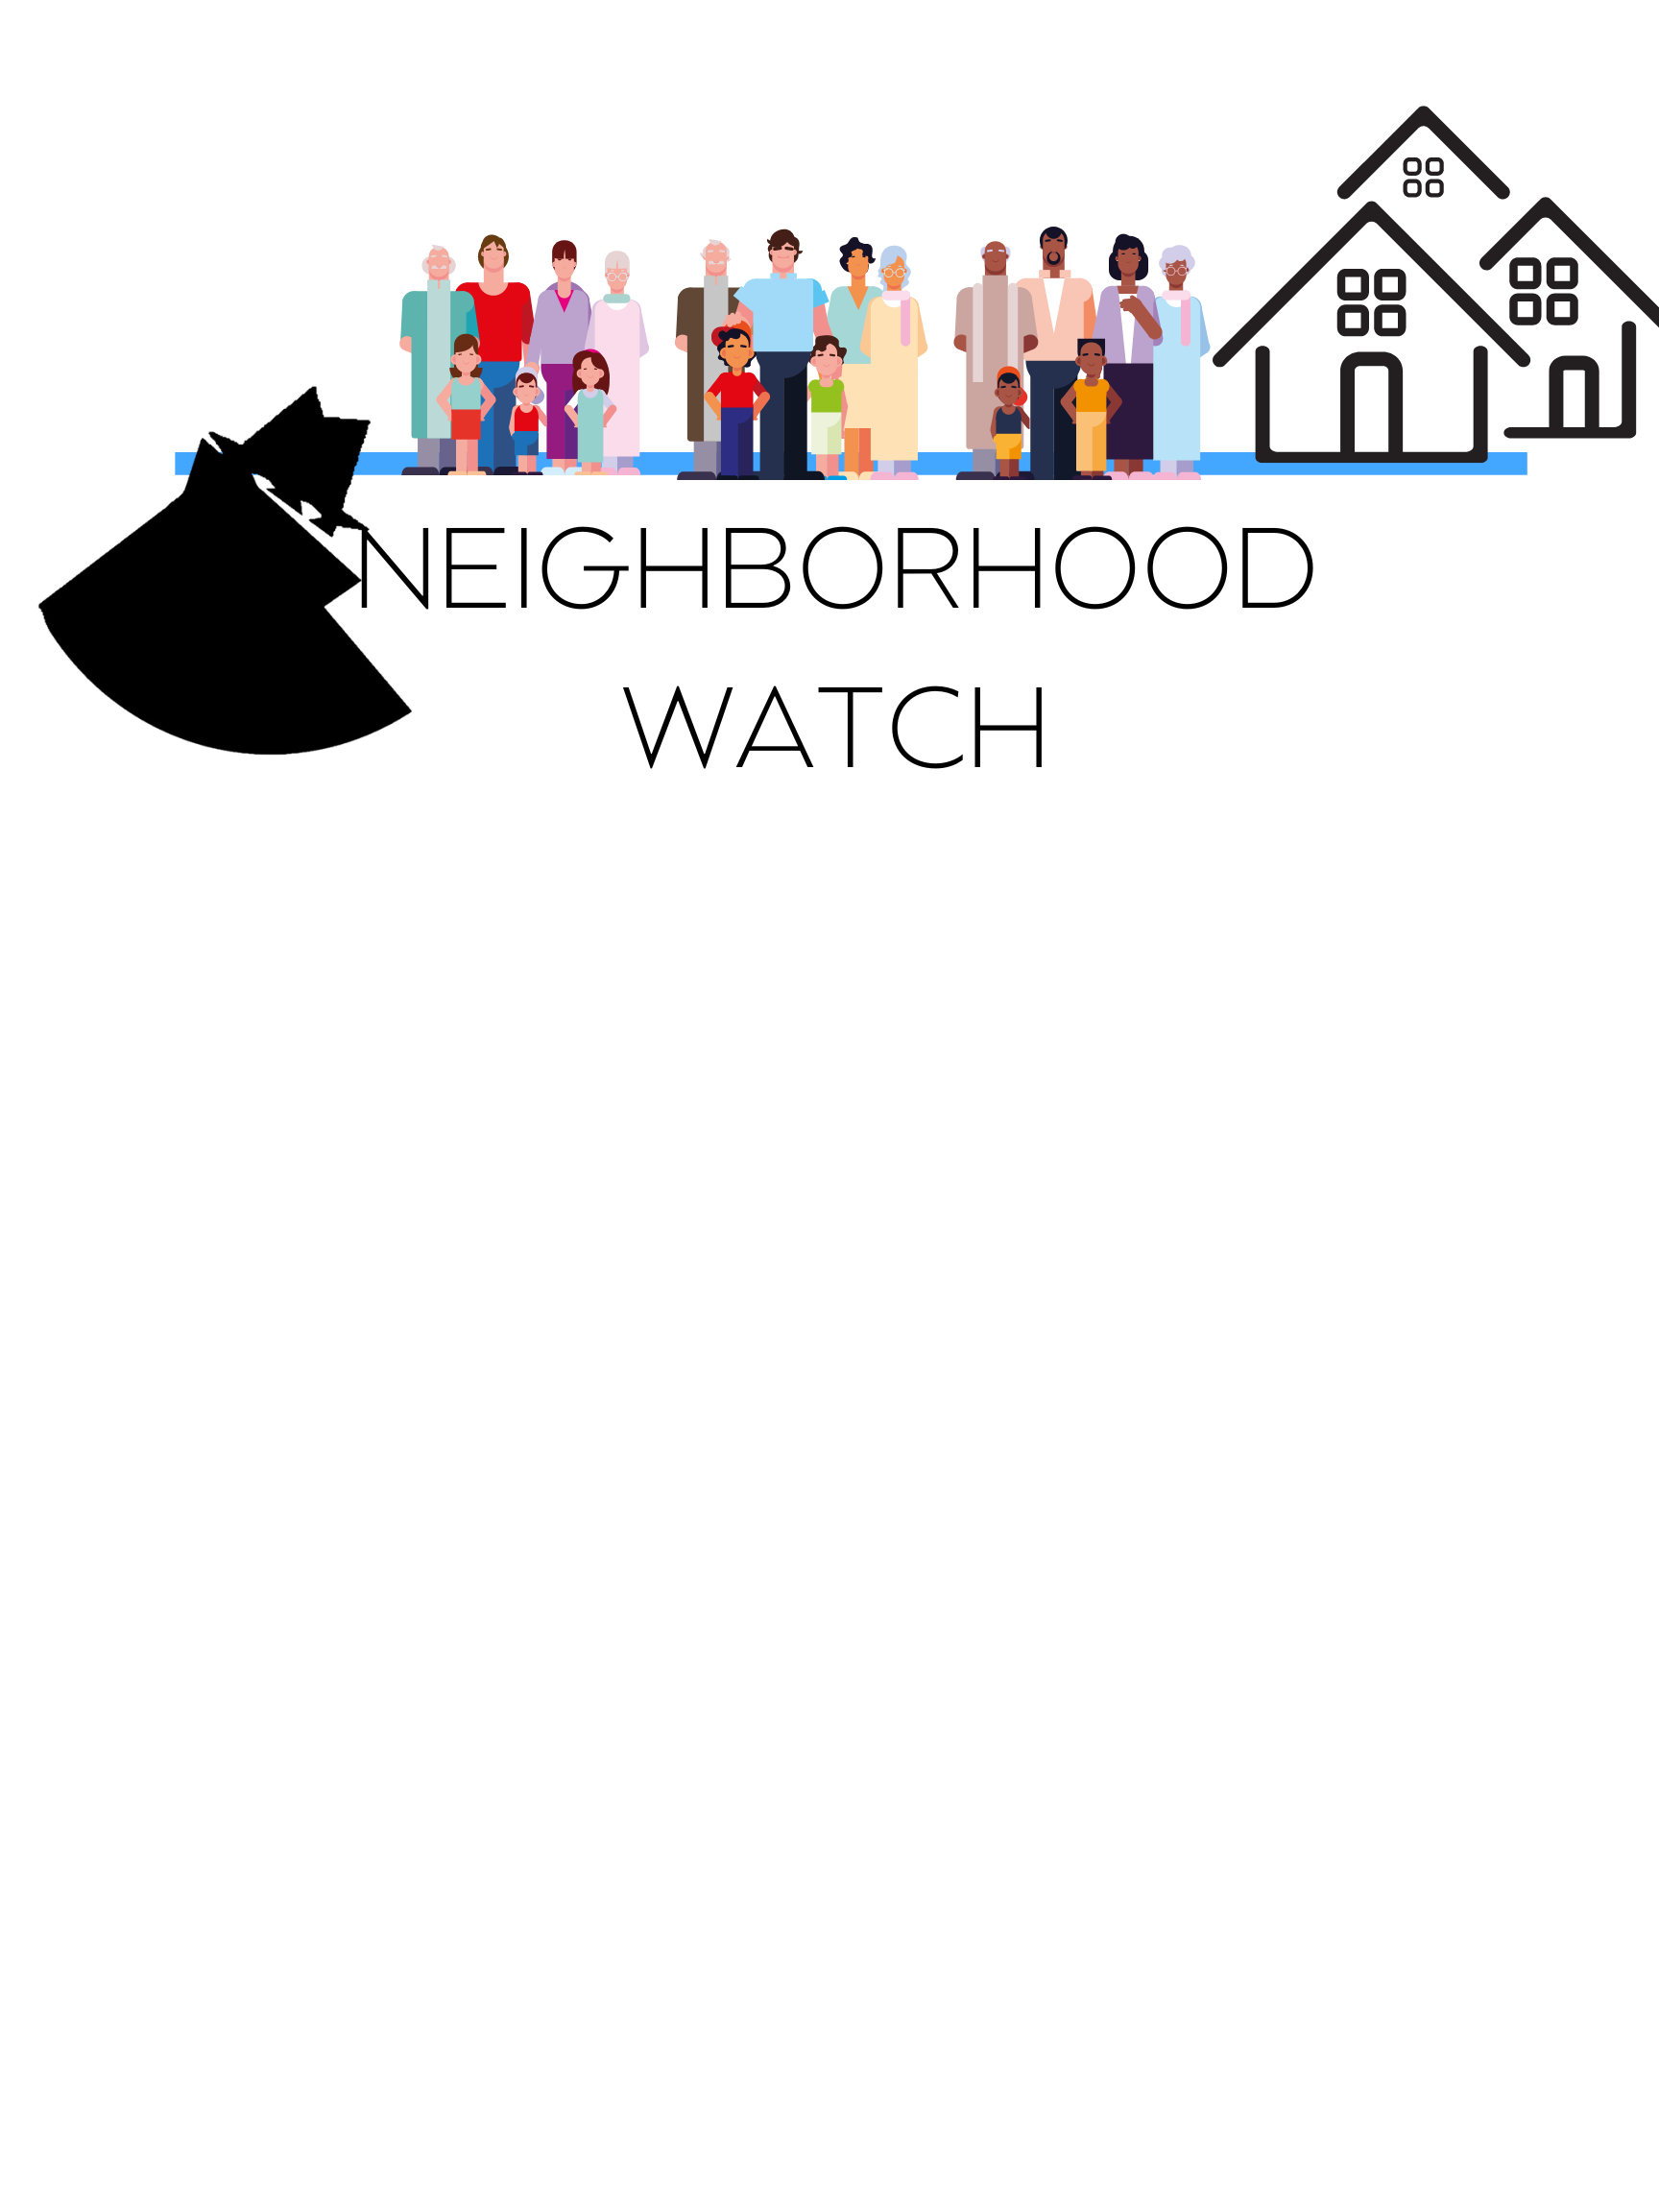 neighborhood Watch LOGO